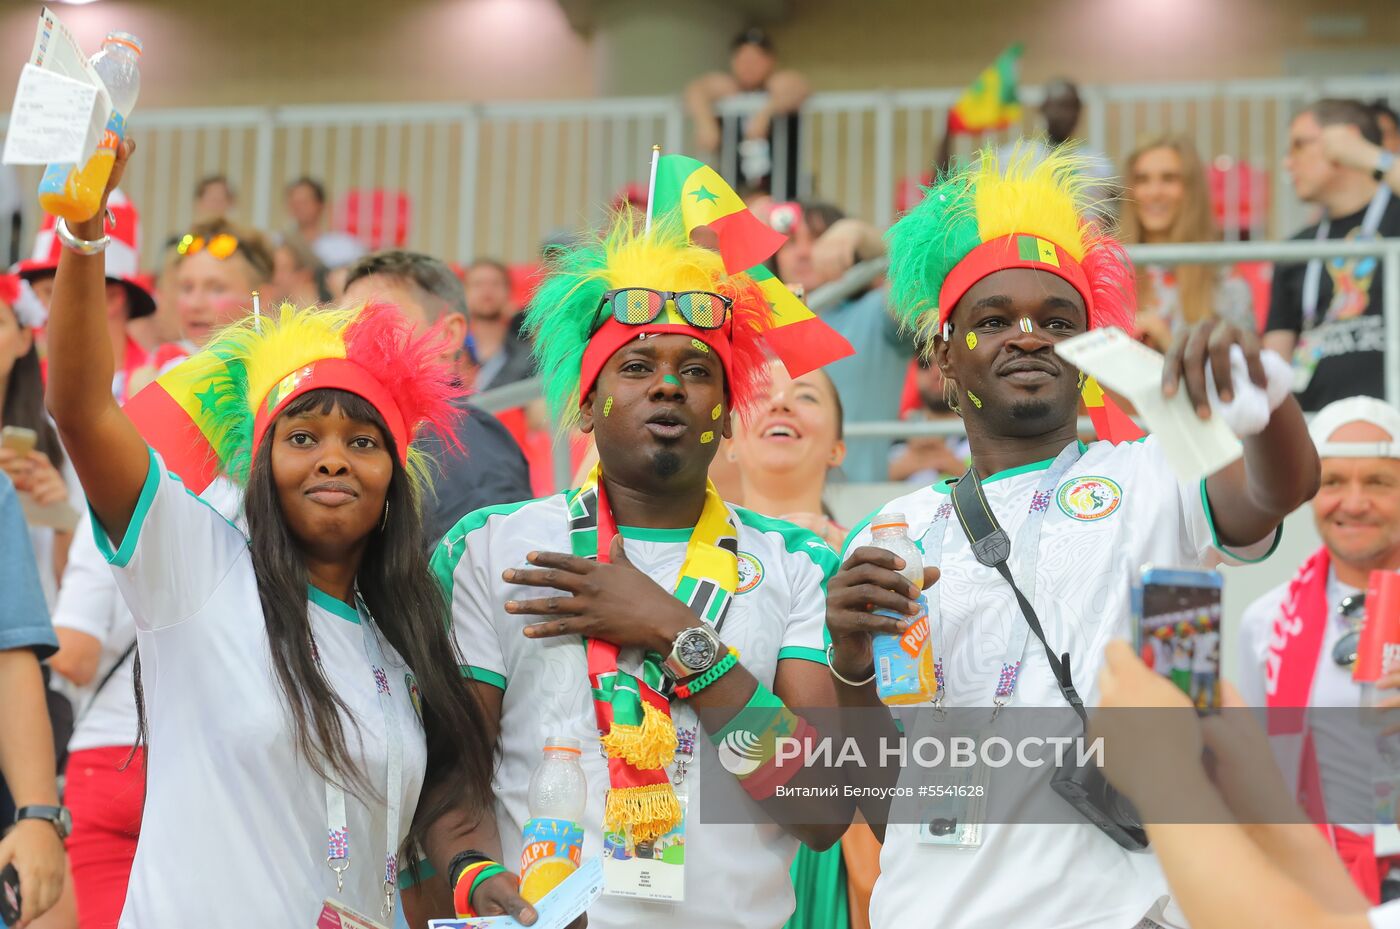 Болельщики перед матчем ЧМ-2018 по футболу между сборными Польши и Сенегала